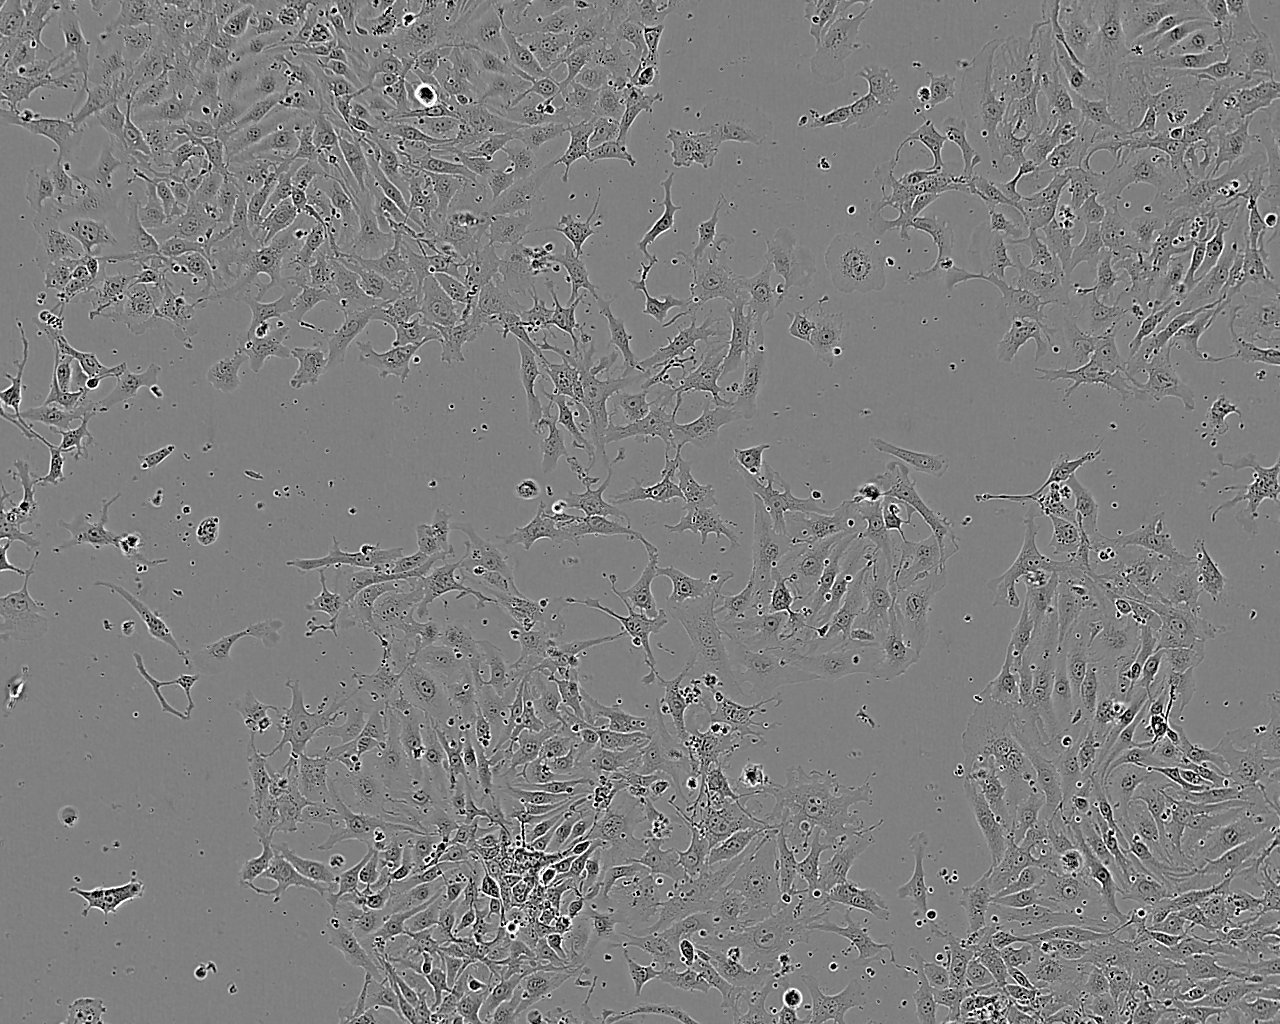 Vero细胞：非洲绿猴肾细胞系,Vero